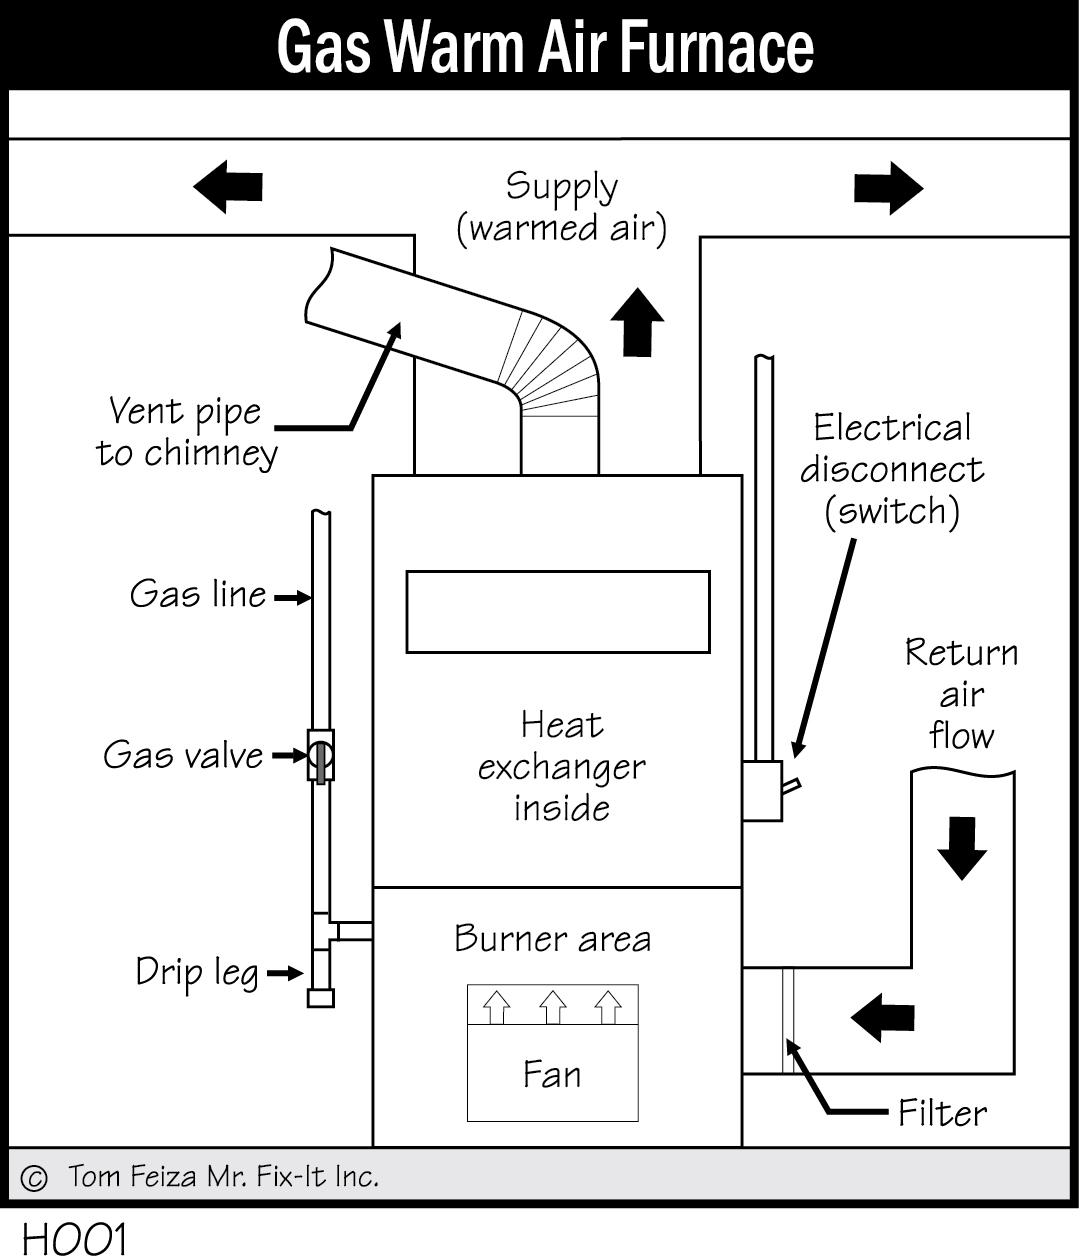 H001 - Gas Warm Air Furnace